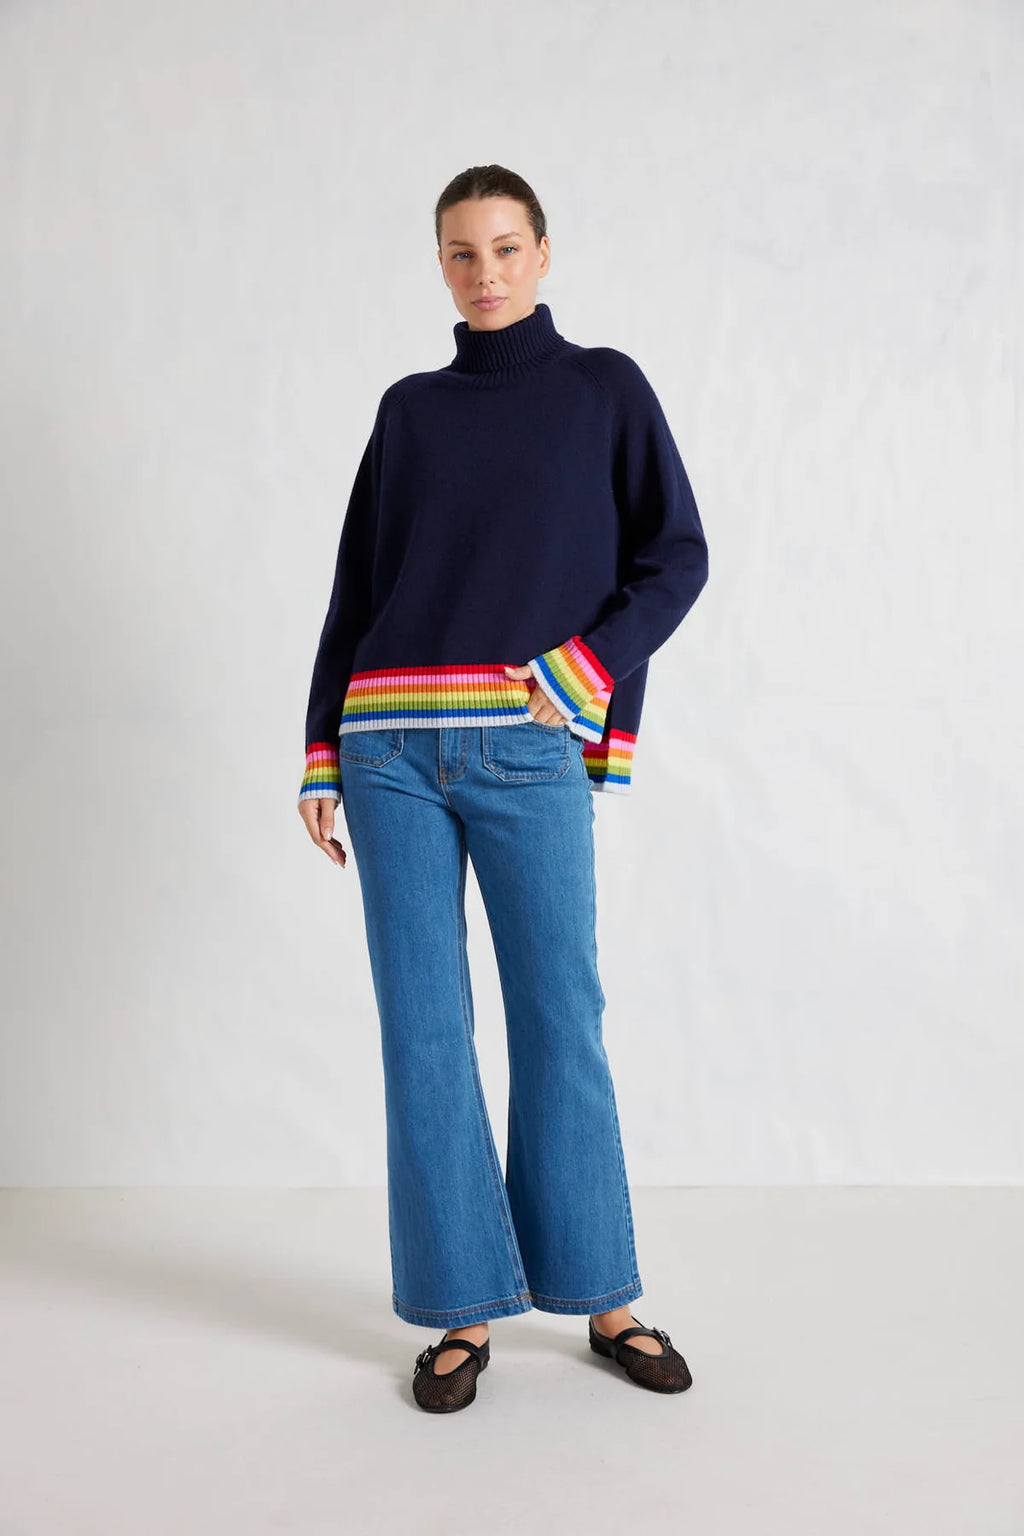 Rainbow Toastie Sweater